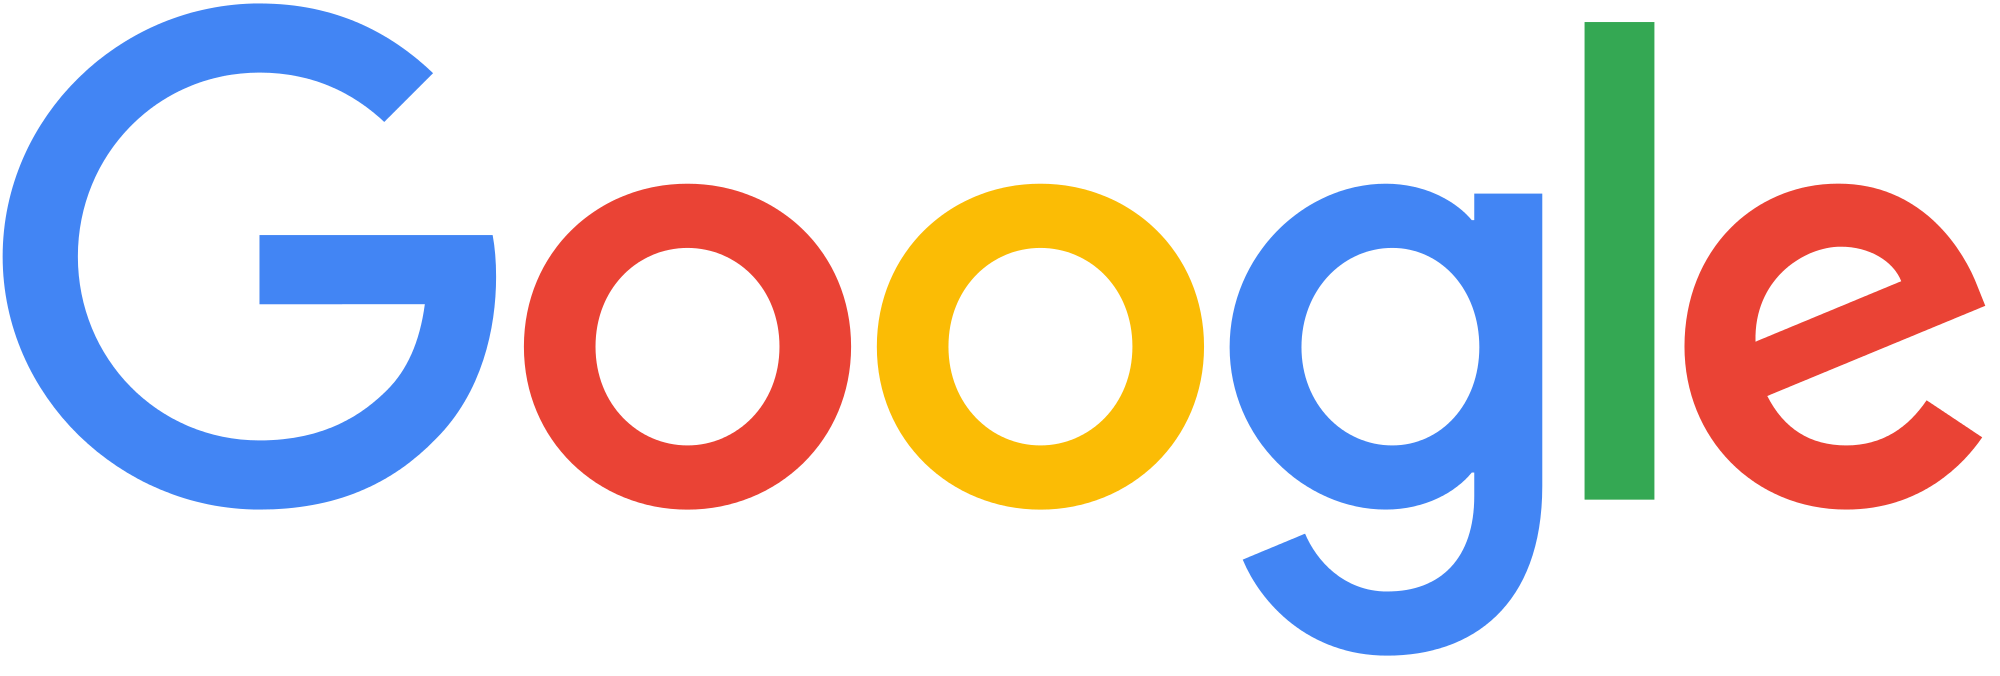 google-logo-png-transparent-background-large-new.png